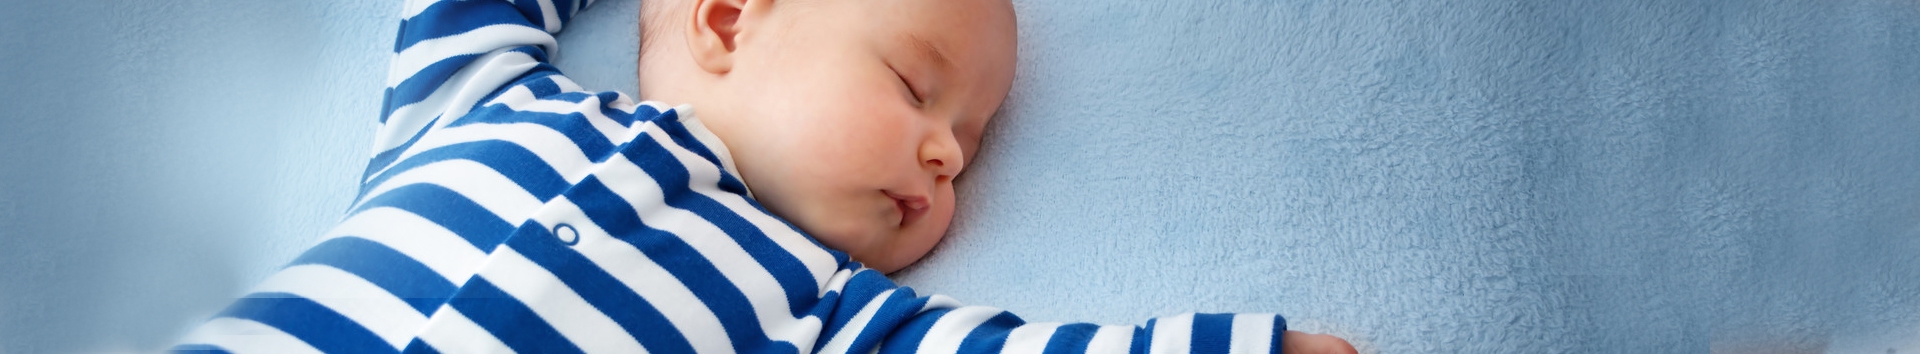 Bebê gemendo durante o sono: Entenda o porquê e como agir